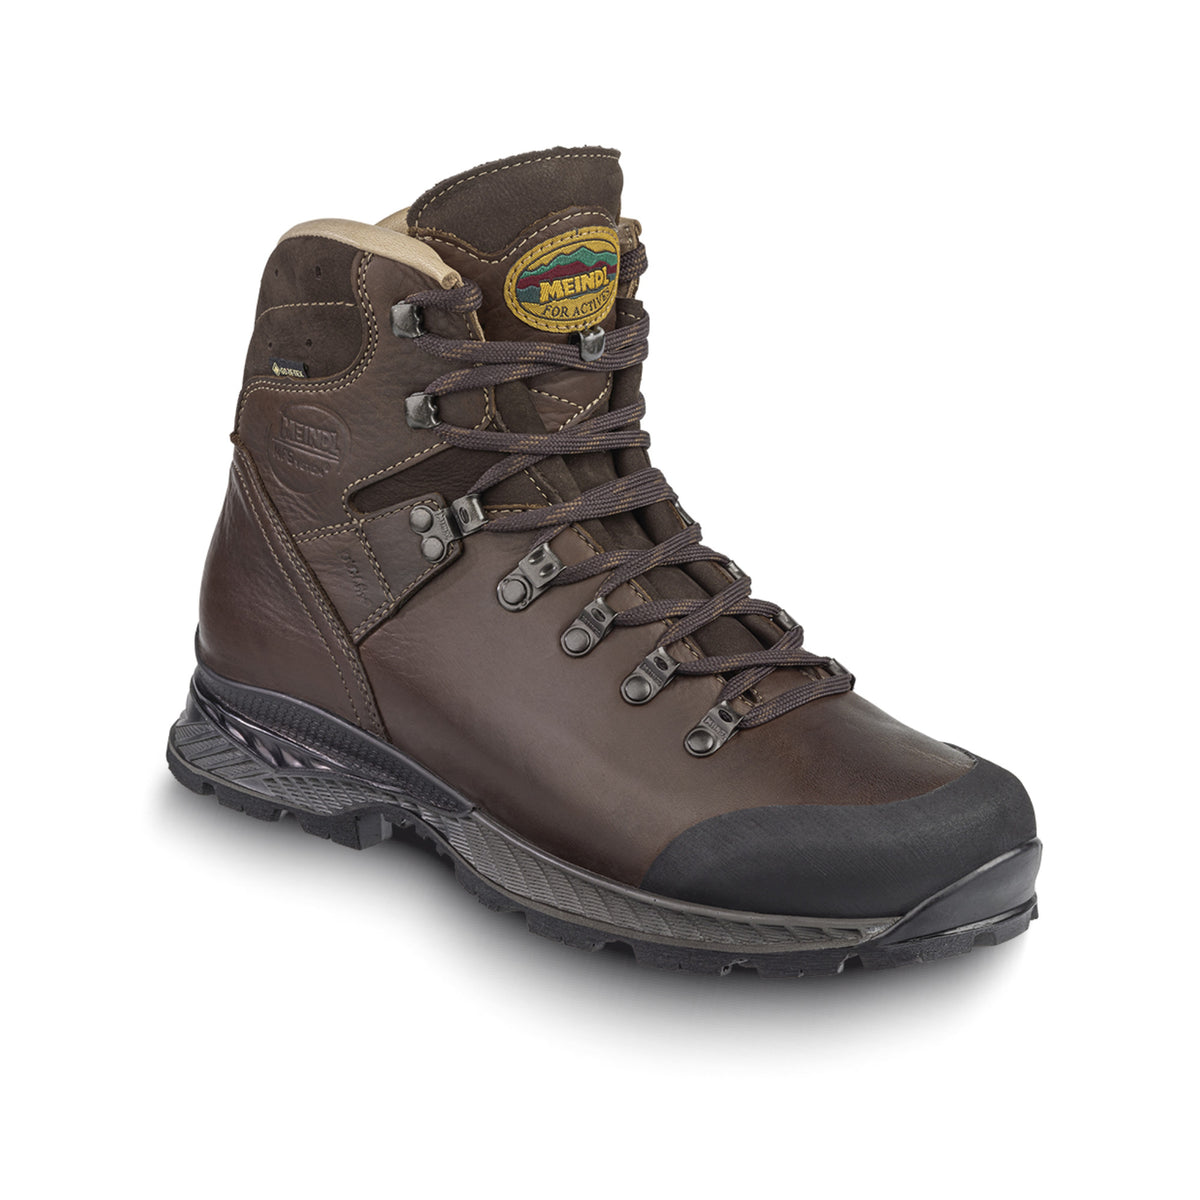 Meindl Toronto MFS Walking Boots - Dark Brown